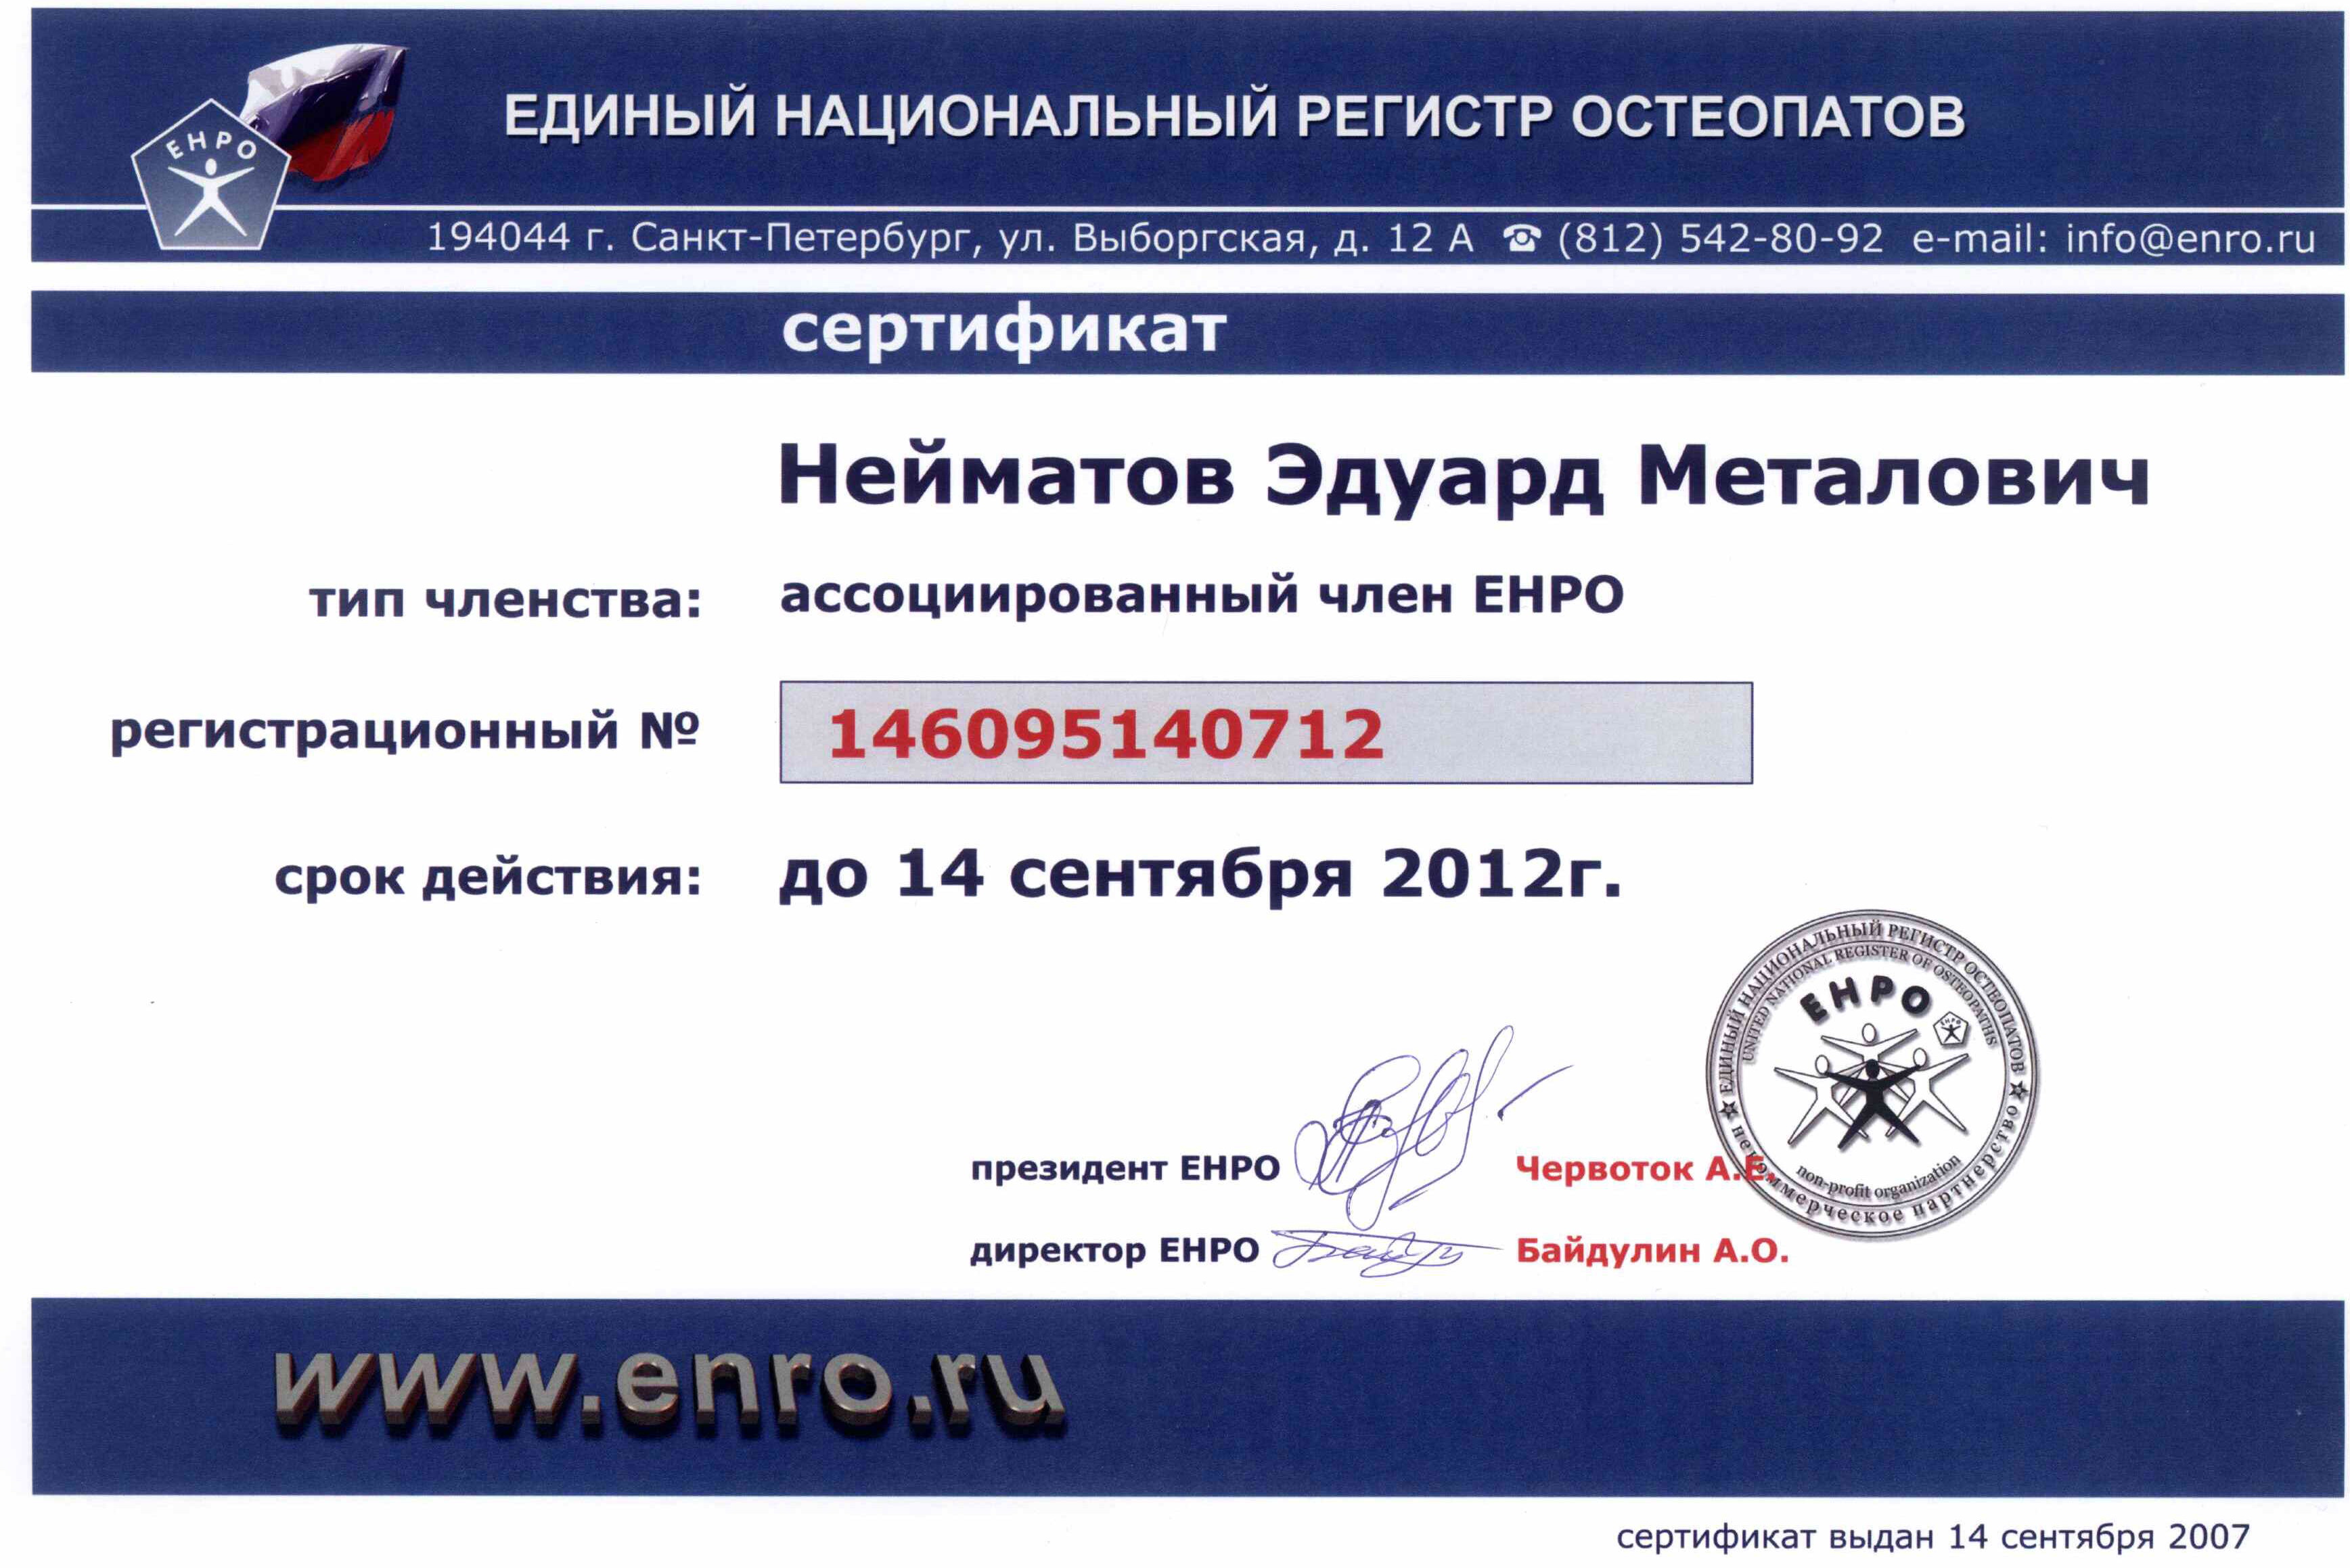 <p>Сертификат - ассоциированный член ЕНРО</p>